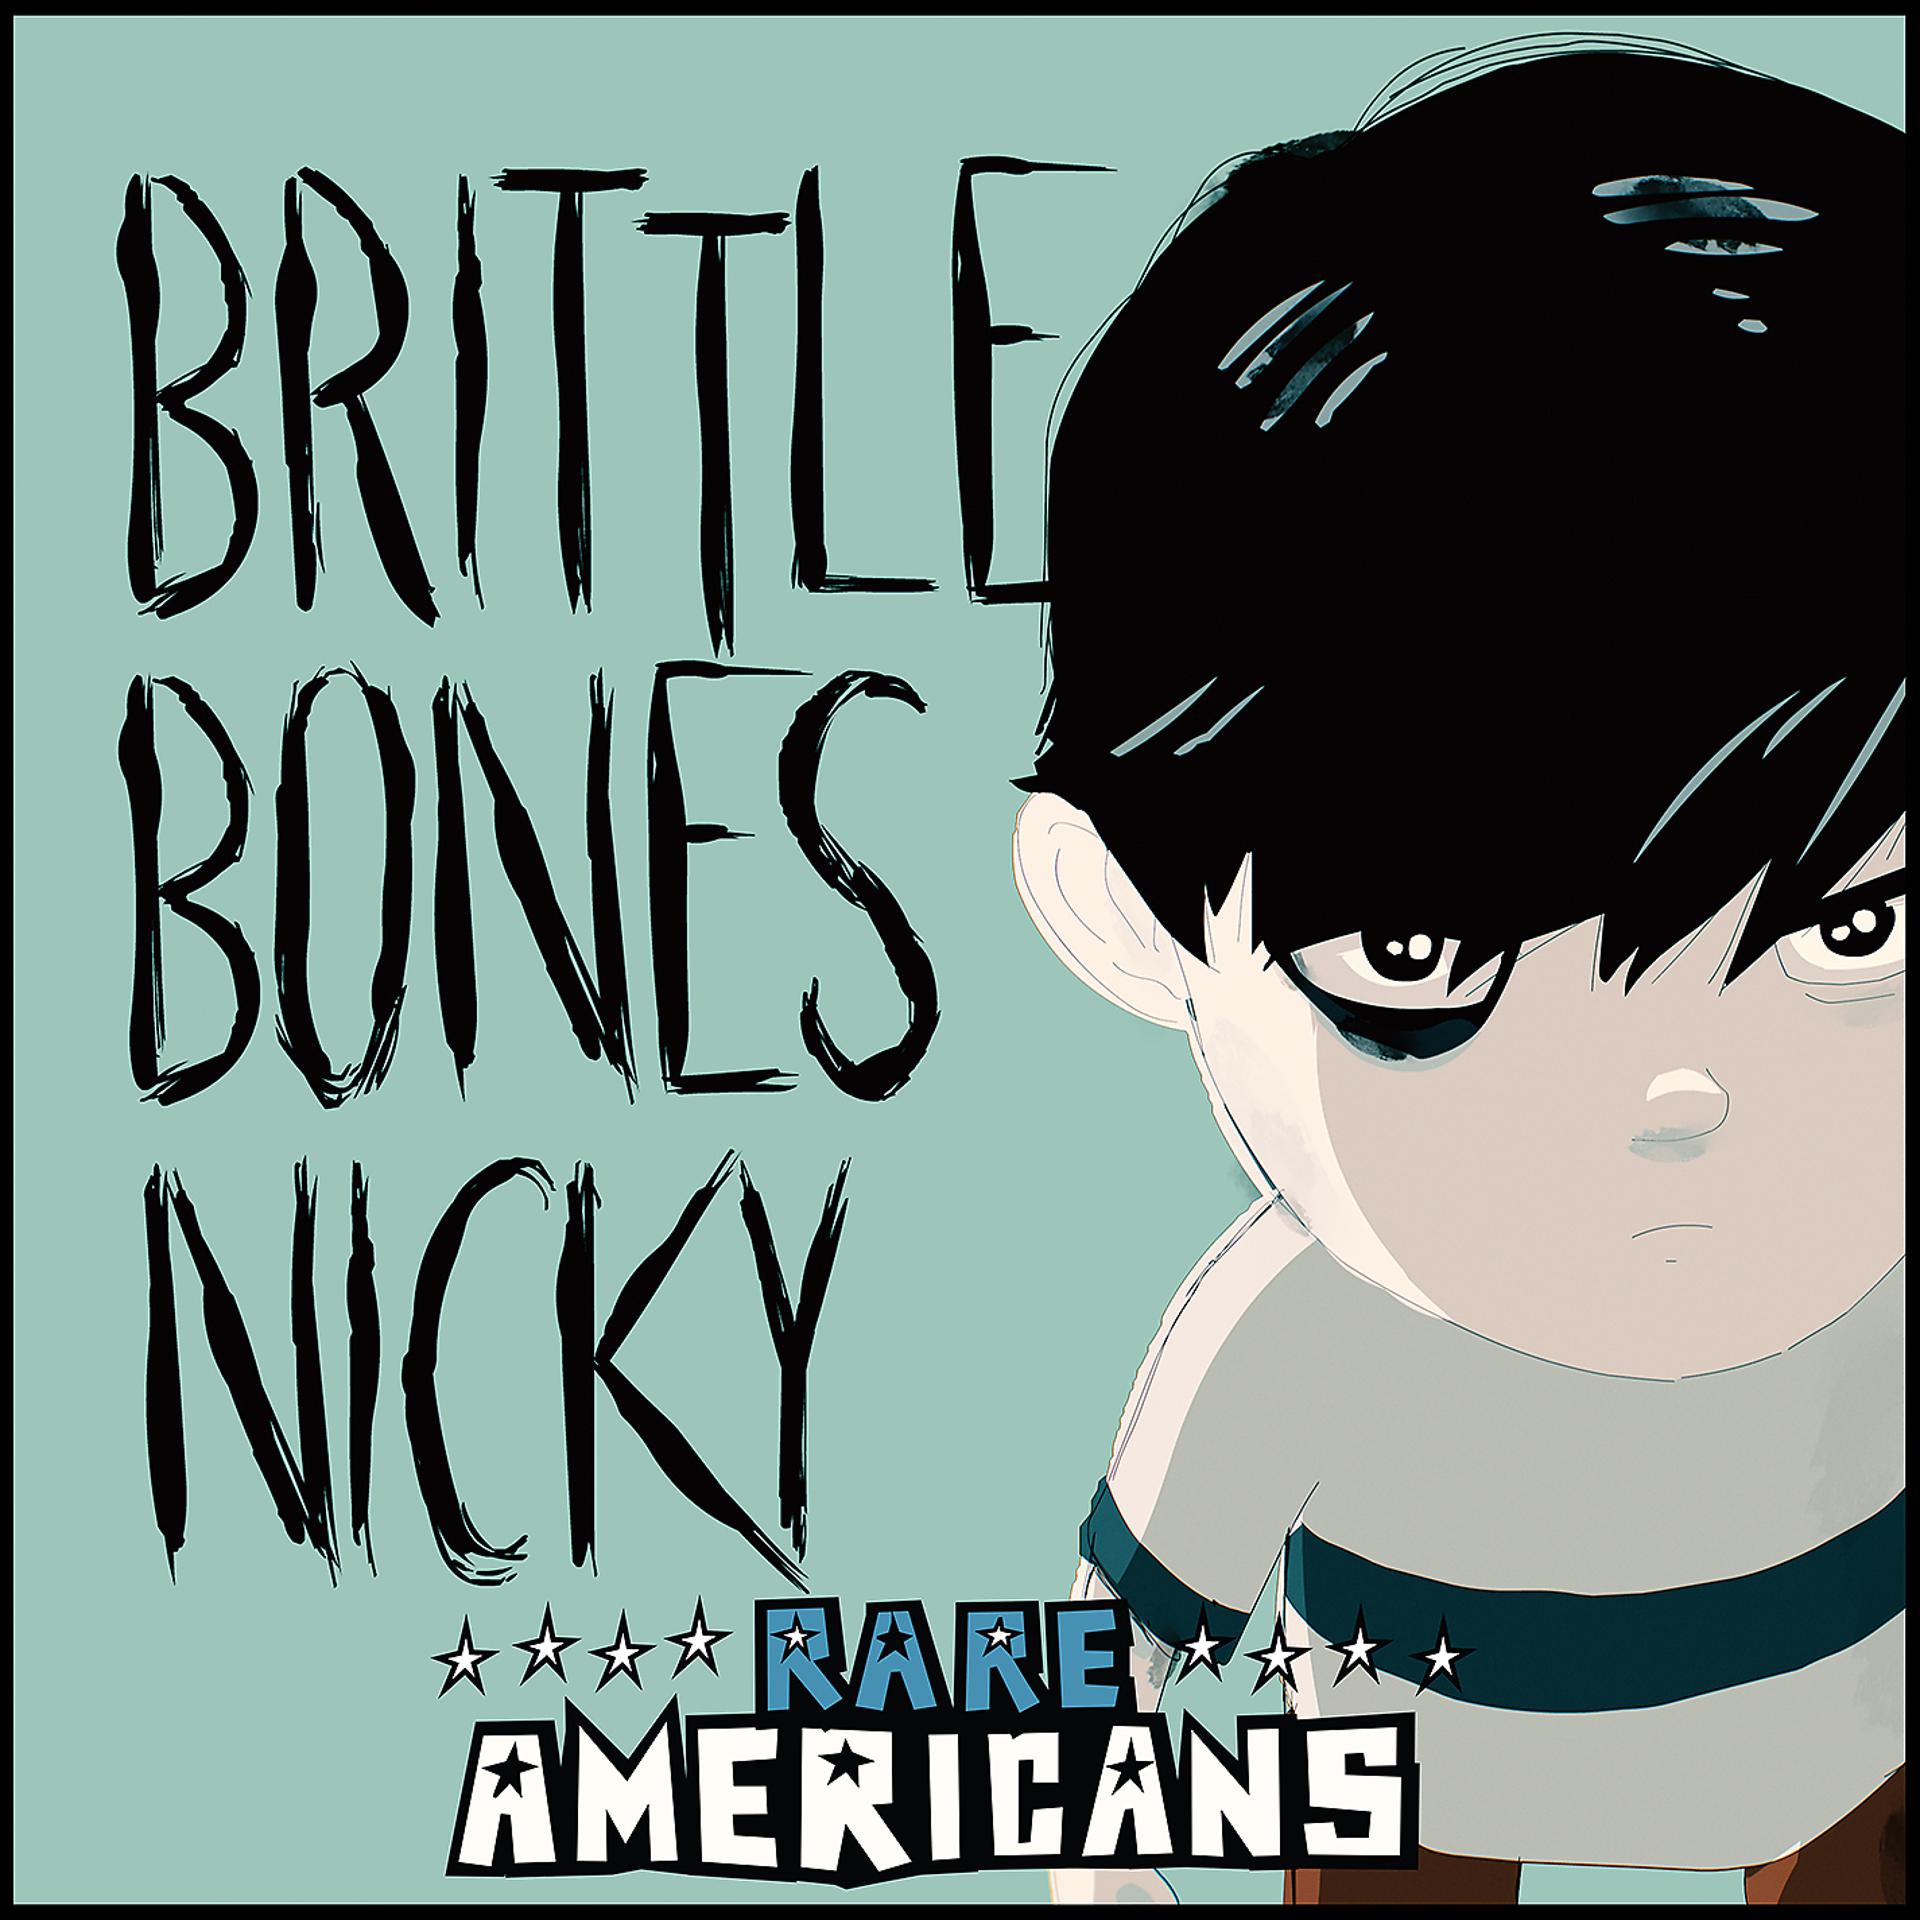 Brittle bones nicky. Rare Americans brittle Bones Nicky. Brittle Bones Nicky 2. Rare Americans обложки. Brittle Bones Nicky Art.